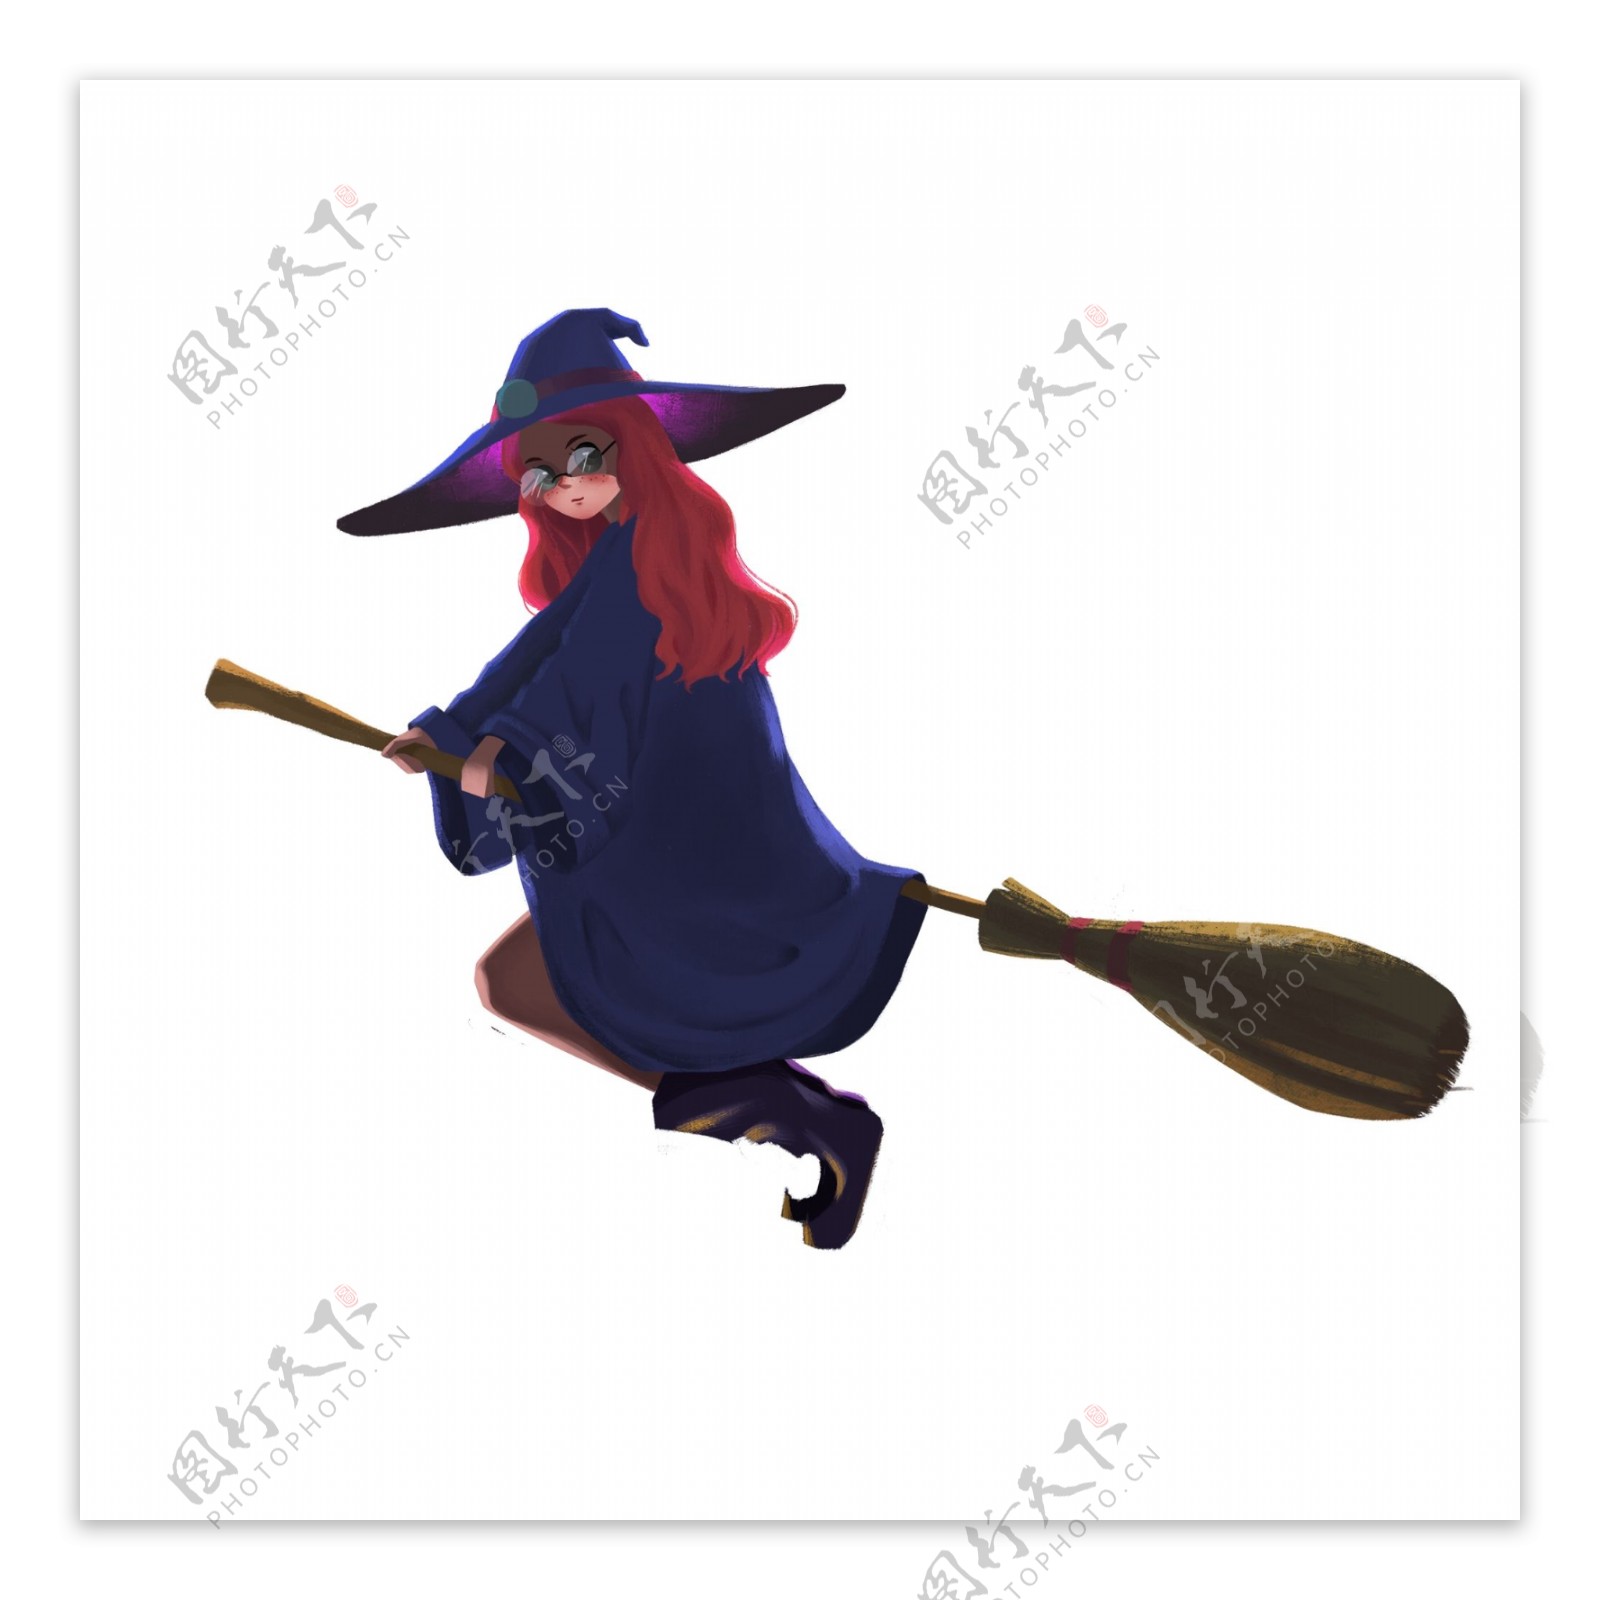 戴黑帽和扫帚的女巫 库存照片. 图片 包括有 黑暗, 背包, 隔离, 盖帽, 迷人, 魅力, 帽子, 表面 - 166218102